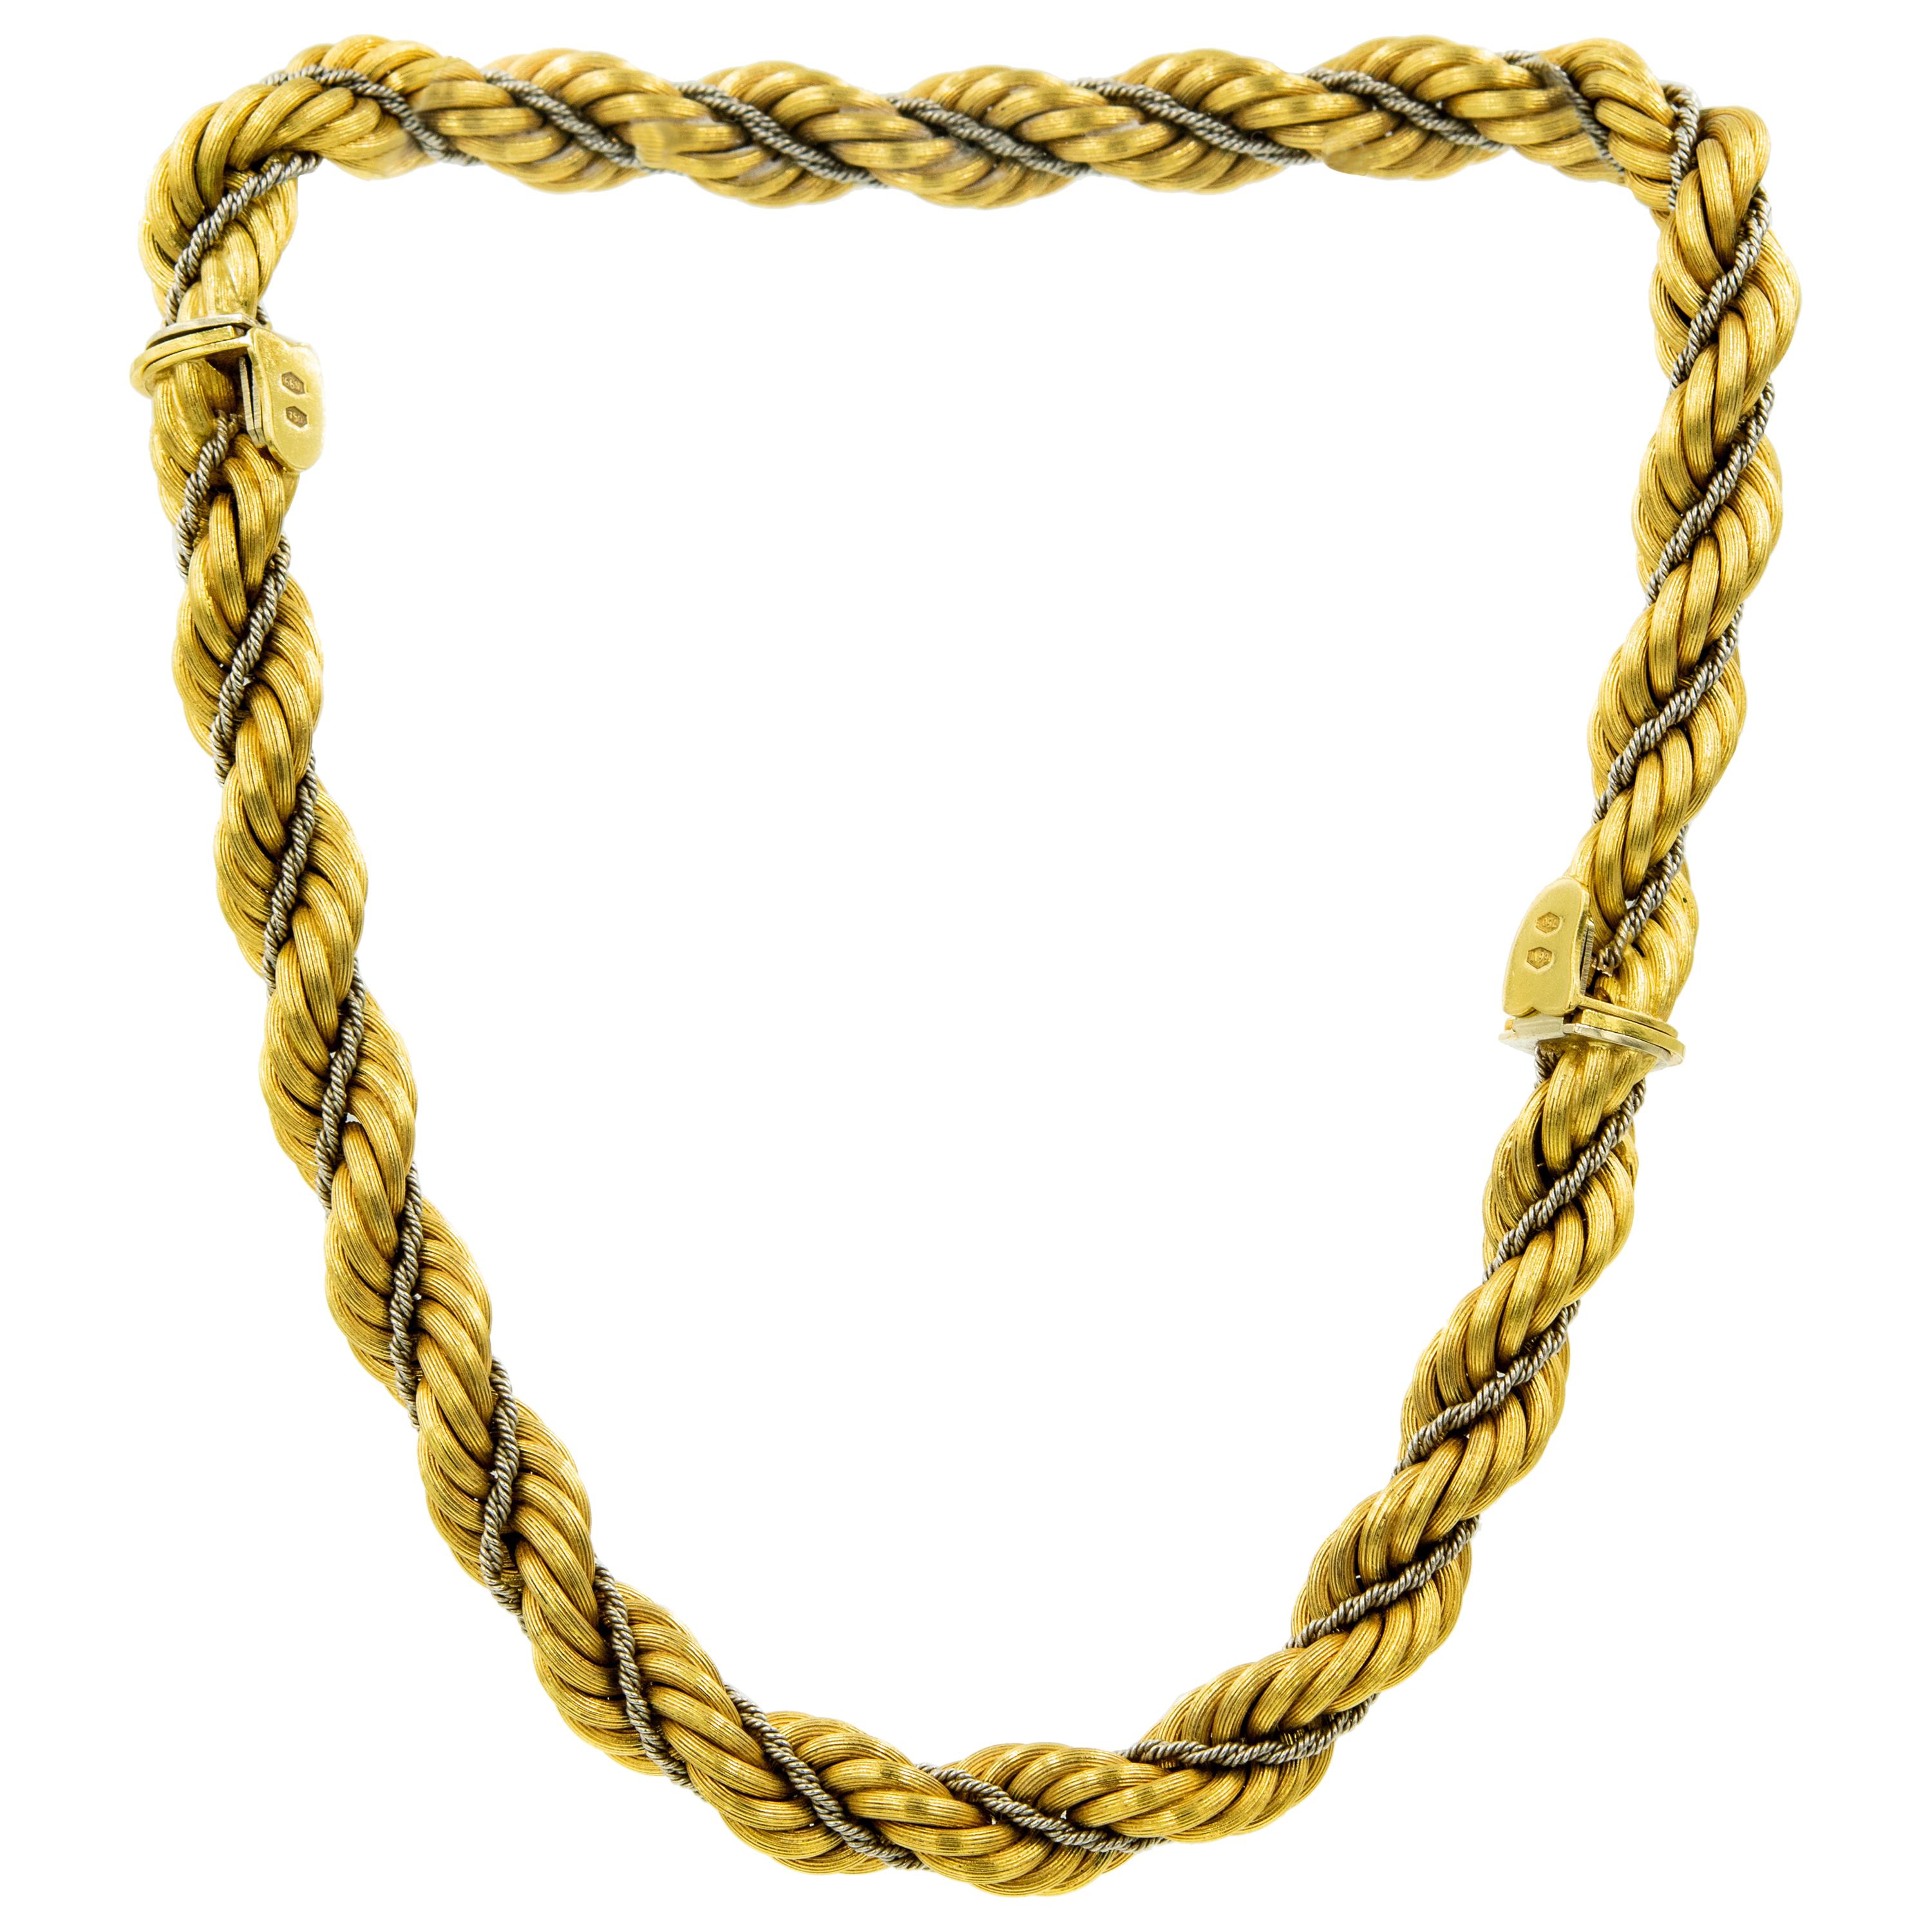 1970 Ensemble chic italien réalisé par le bijoutier de Vincenza Nicolis Cola. L'ensemble comprend une paire de bracelets en or 18 carats comprenant une chaîne de corde en or jaune torsadée plus large (10,75 mm) entrelacée avec une chaîne de corde en